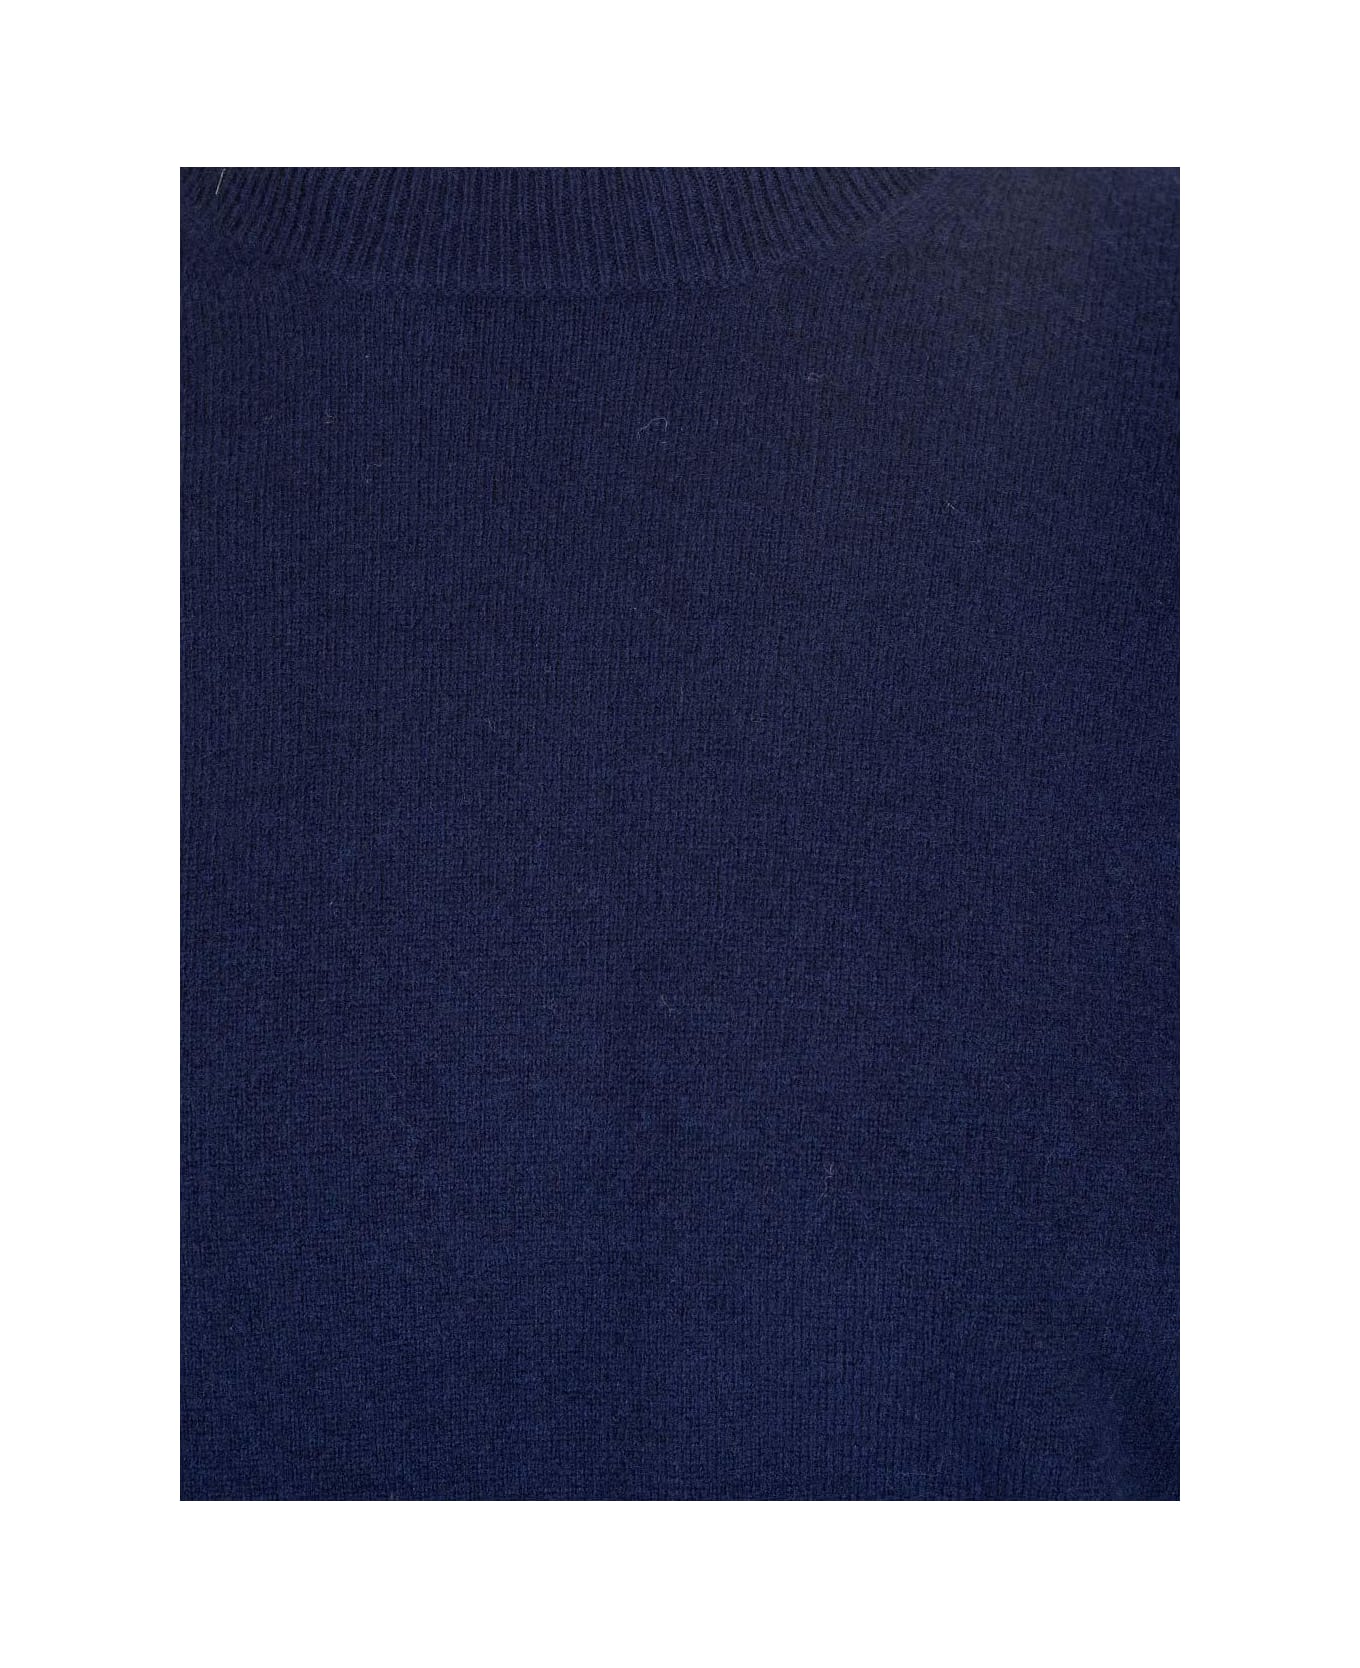 Comme des Garçons Shirt Crewneck Knitted Jumper - Blu navy